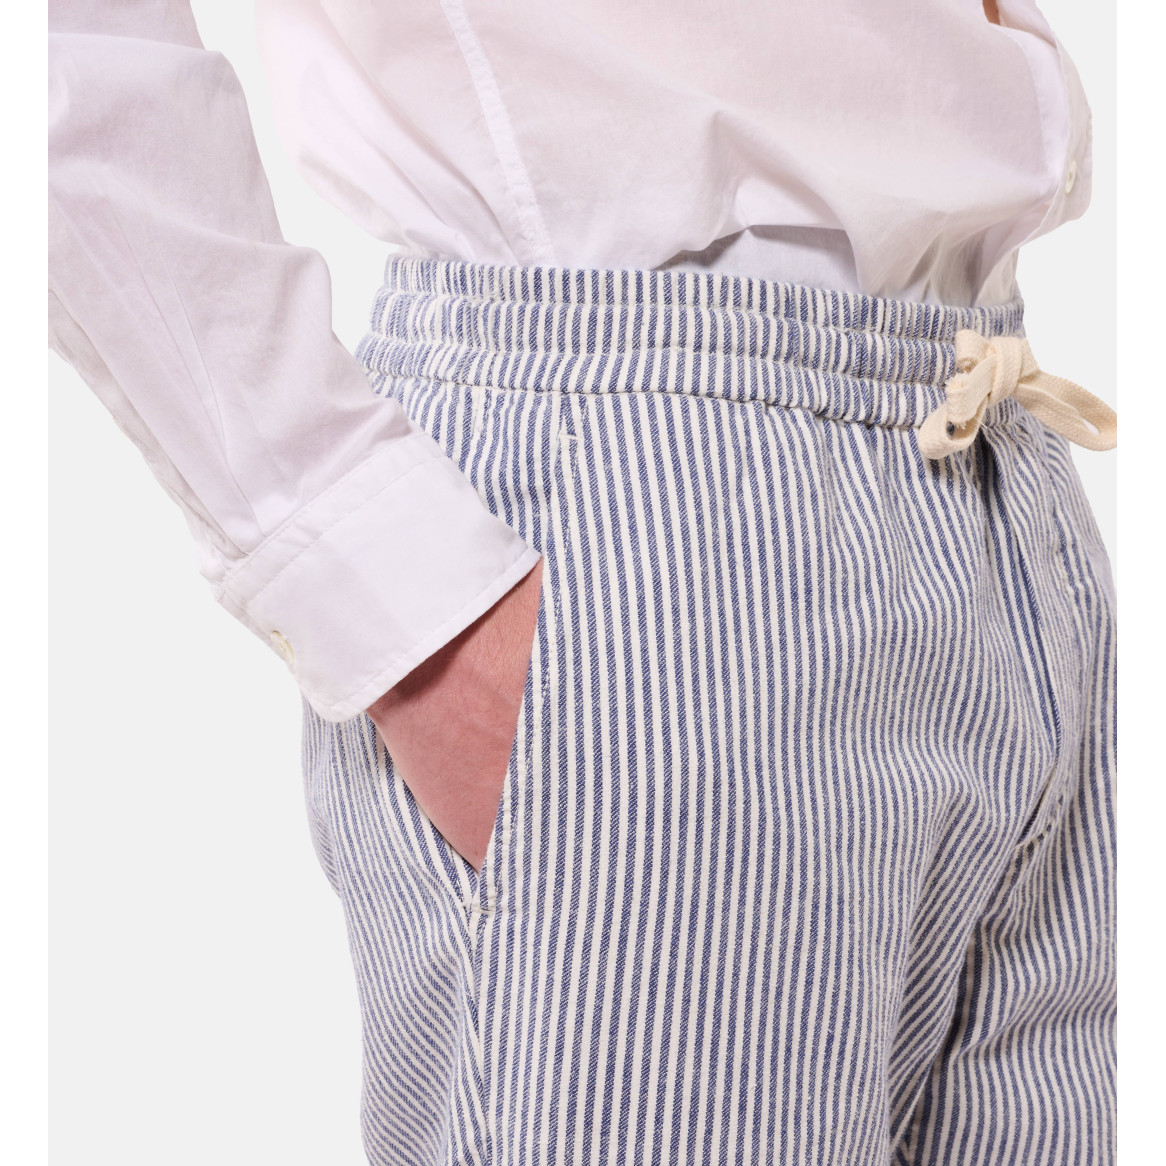 Pantalon coton lin taille élastique